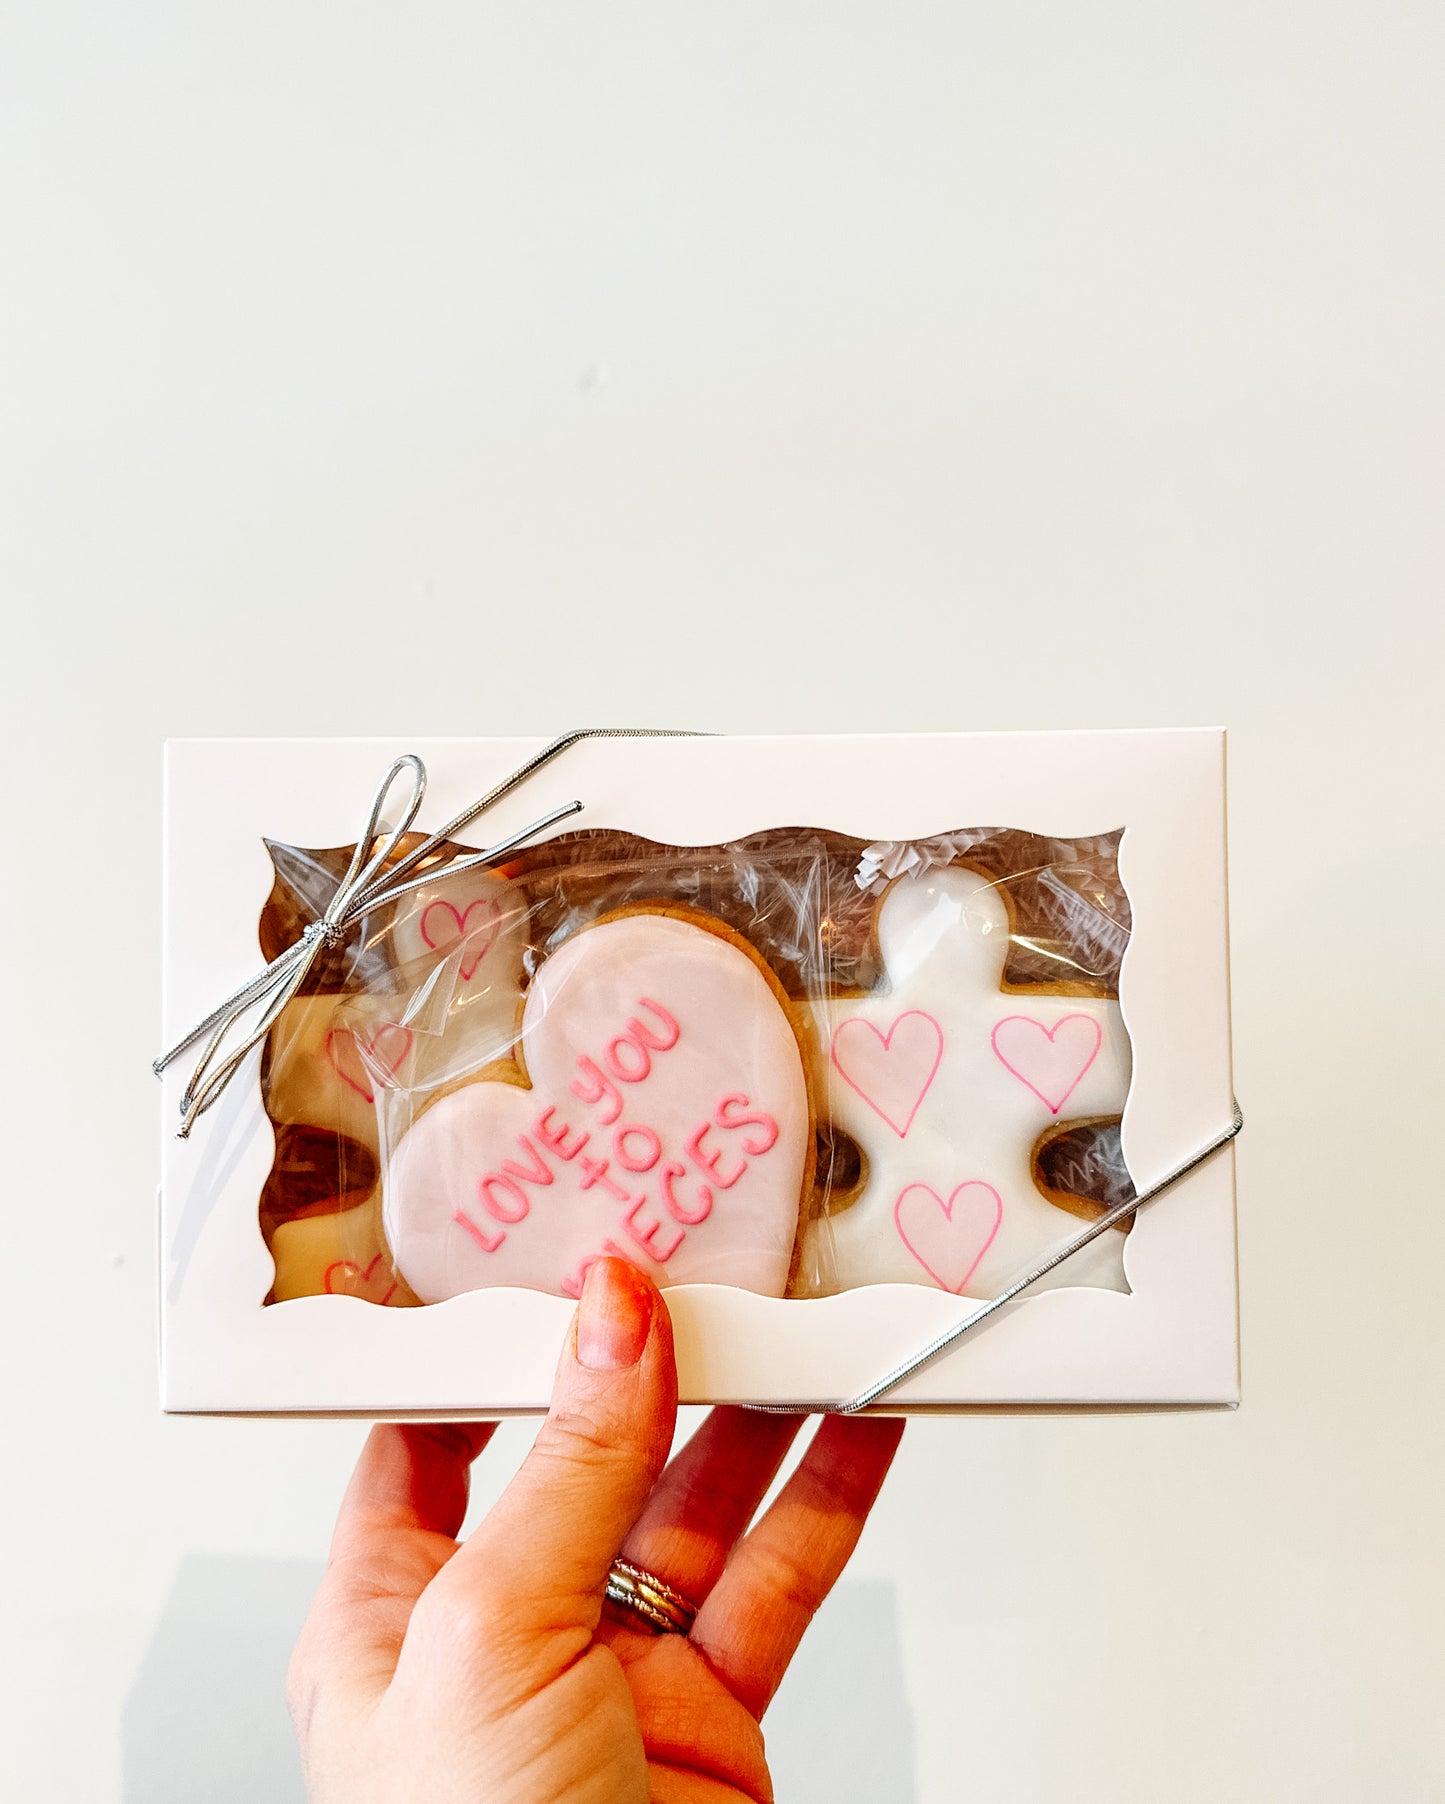 
                  
                    Roda’s V-Day Cookies
                  
                